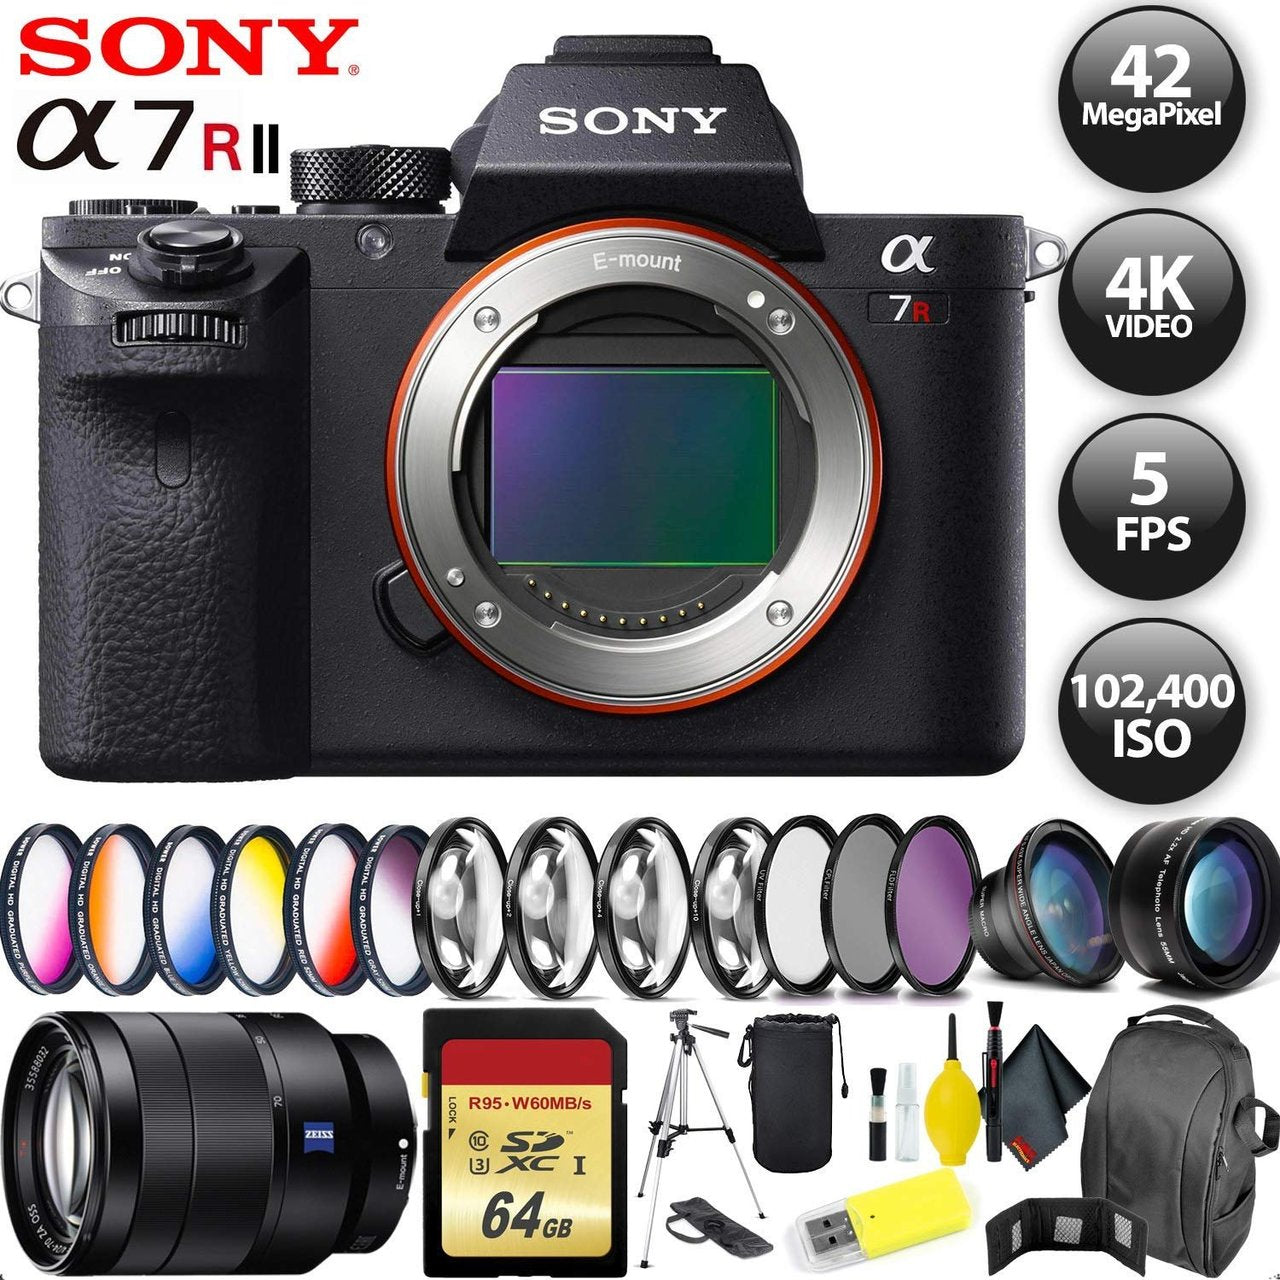 Sony Alpha a7R II Mirrorless Digital Camera + 32GB Memory Card + Sony FE 70-200mm Lens